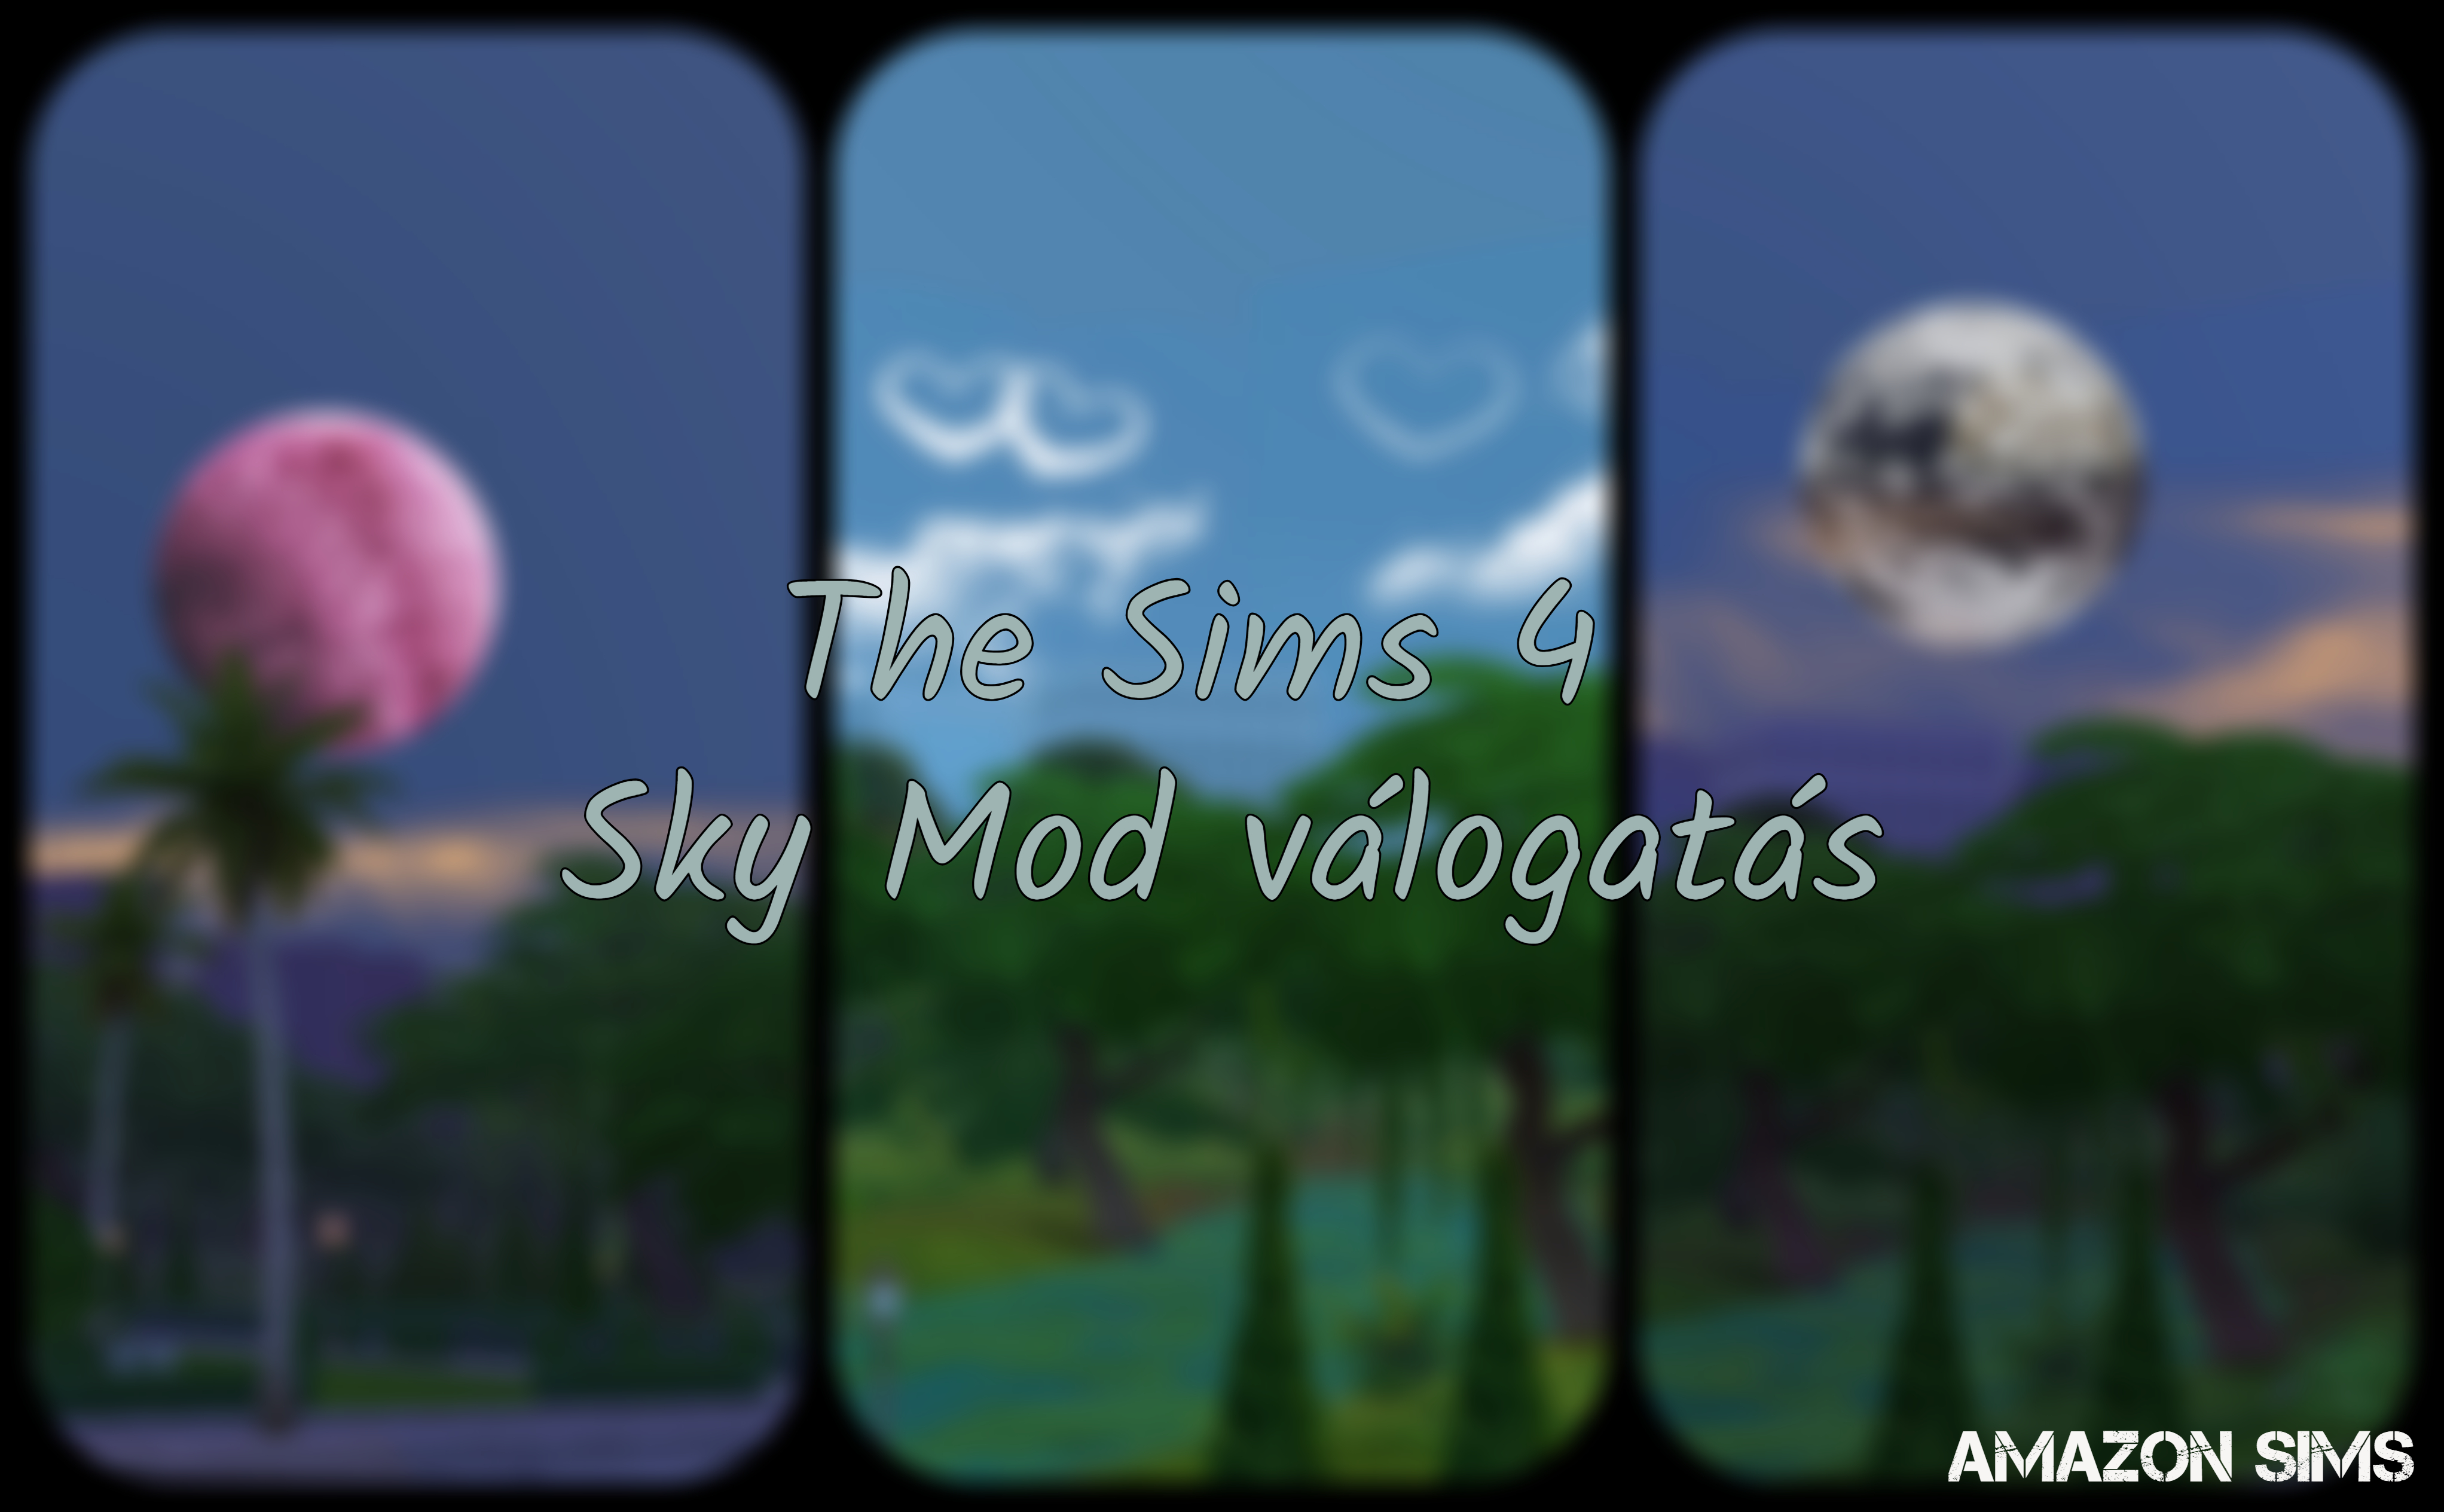 the_sims_4_sky_mod_valogatas.jpg